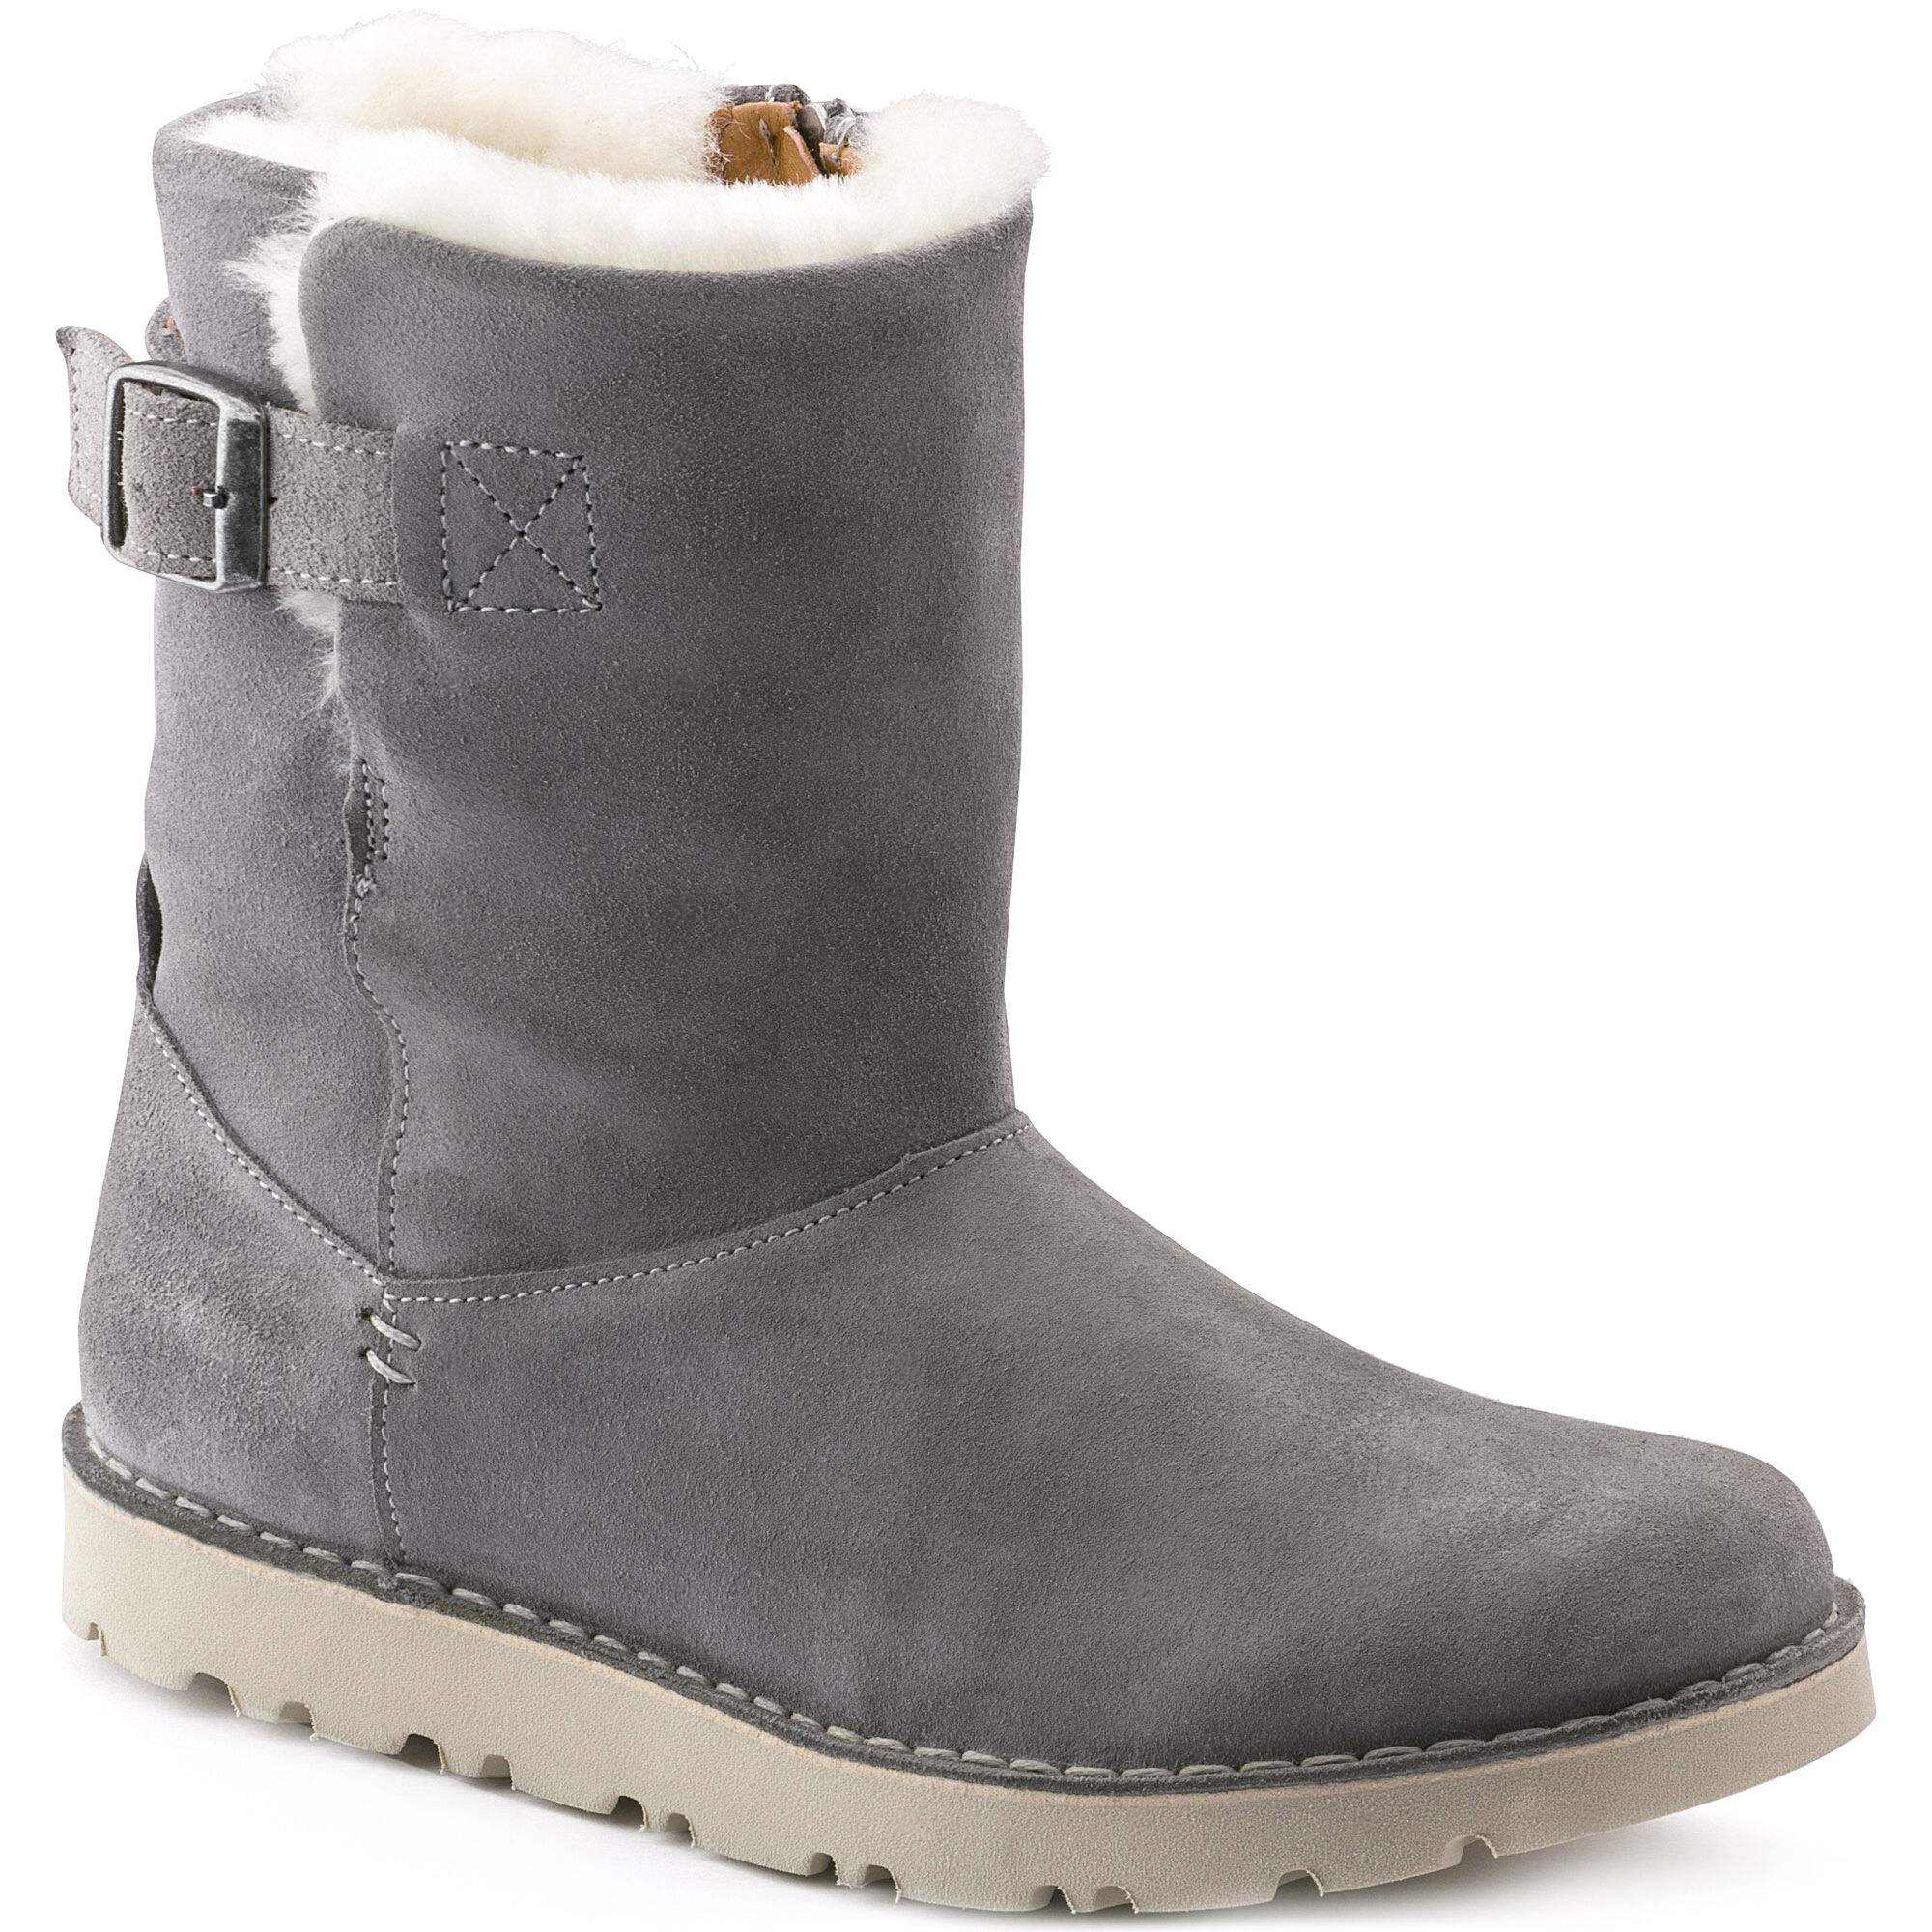 Зимняя обувь Сапоги Birkenstock Westford натуральная замша